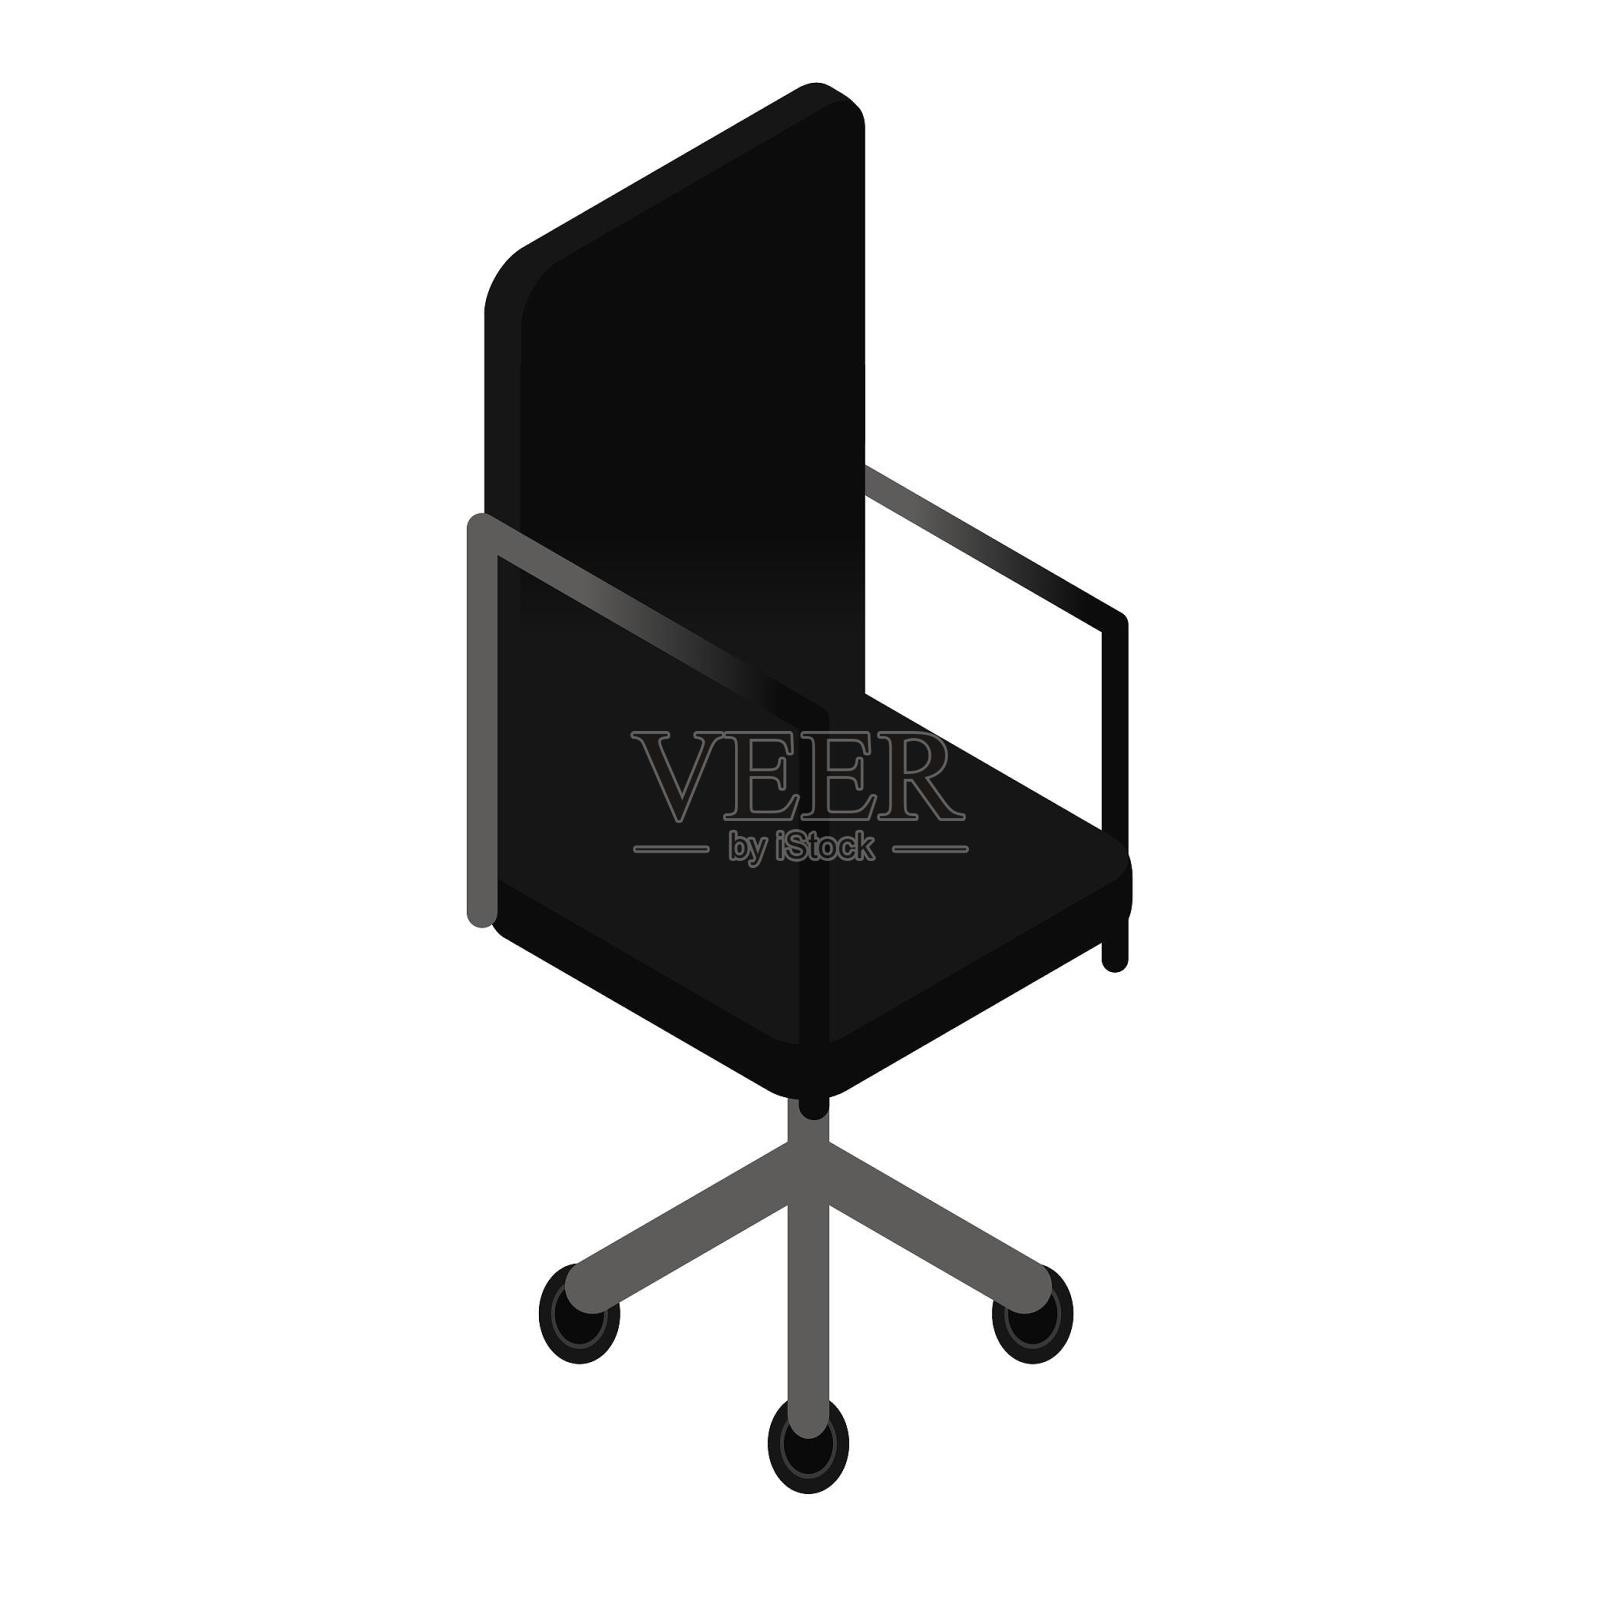 椅子电脑椅家具家居黑色设计元素图片